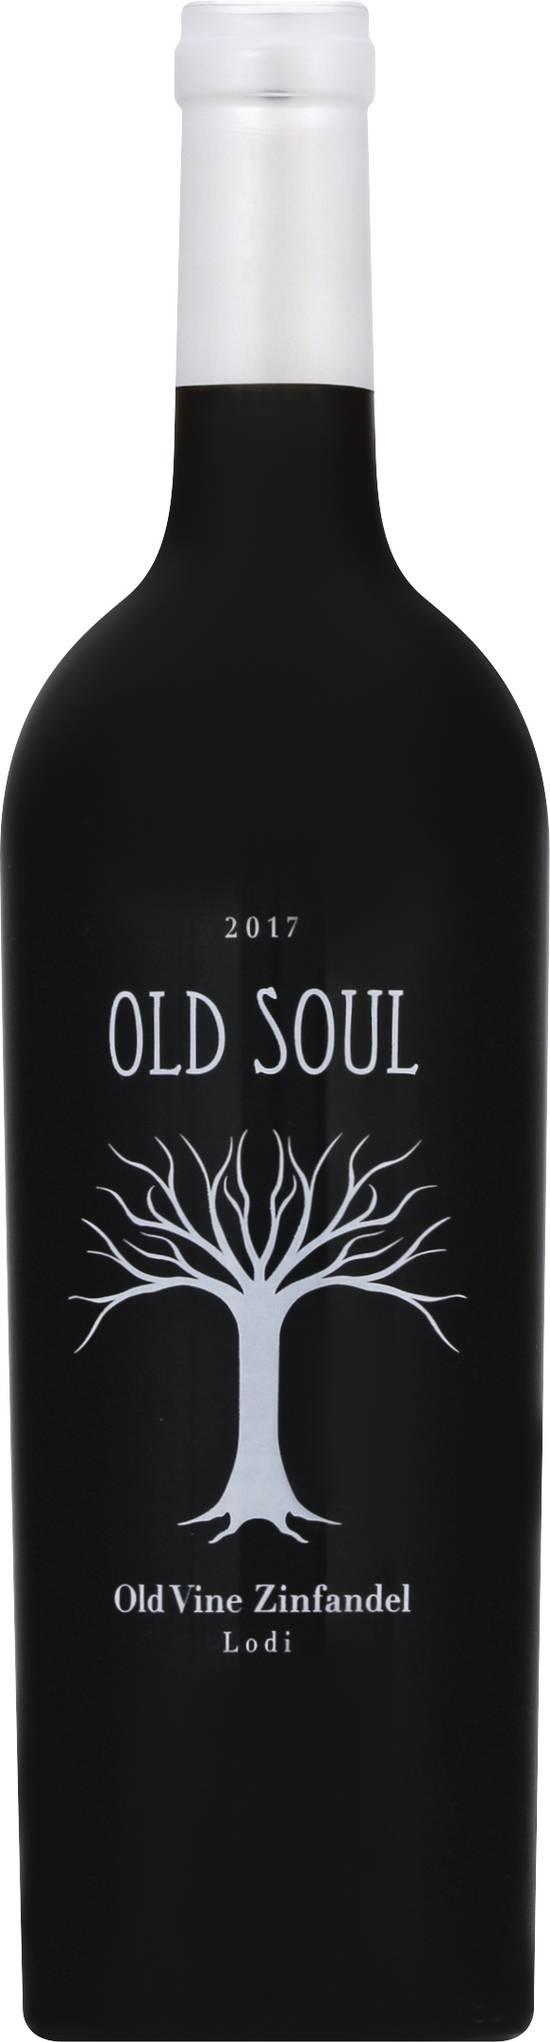 Old Soul Old Vine Zinfandel Wine (750 ml)